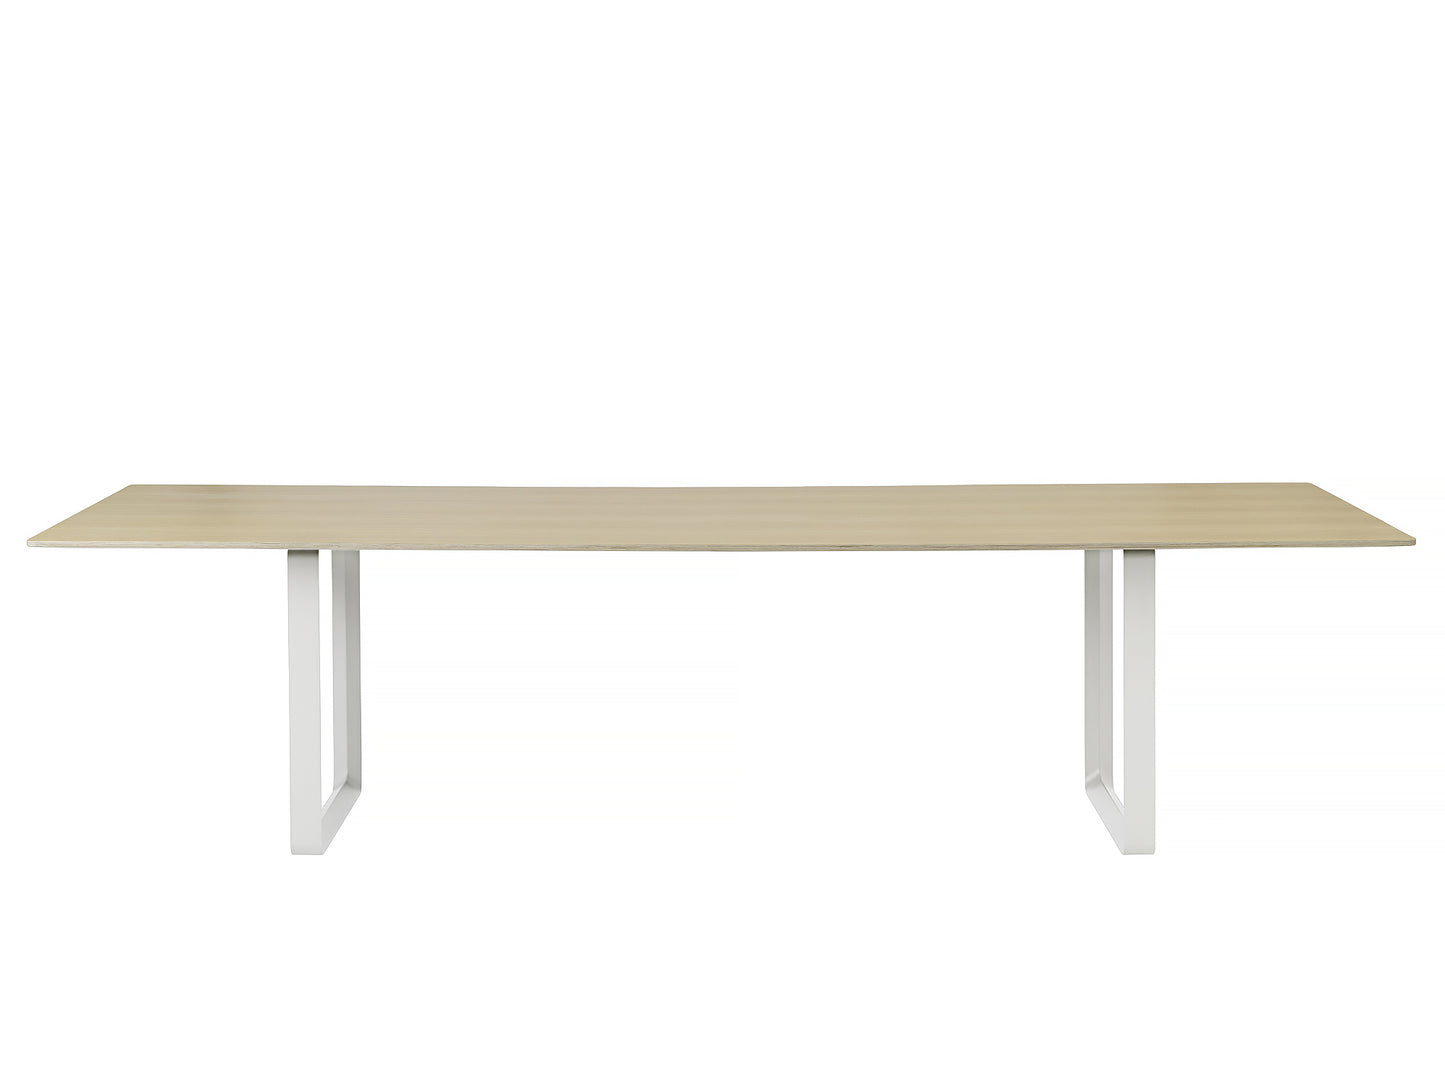 70/70 Table by Muuto - 295 x 108 - Oak / White